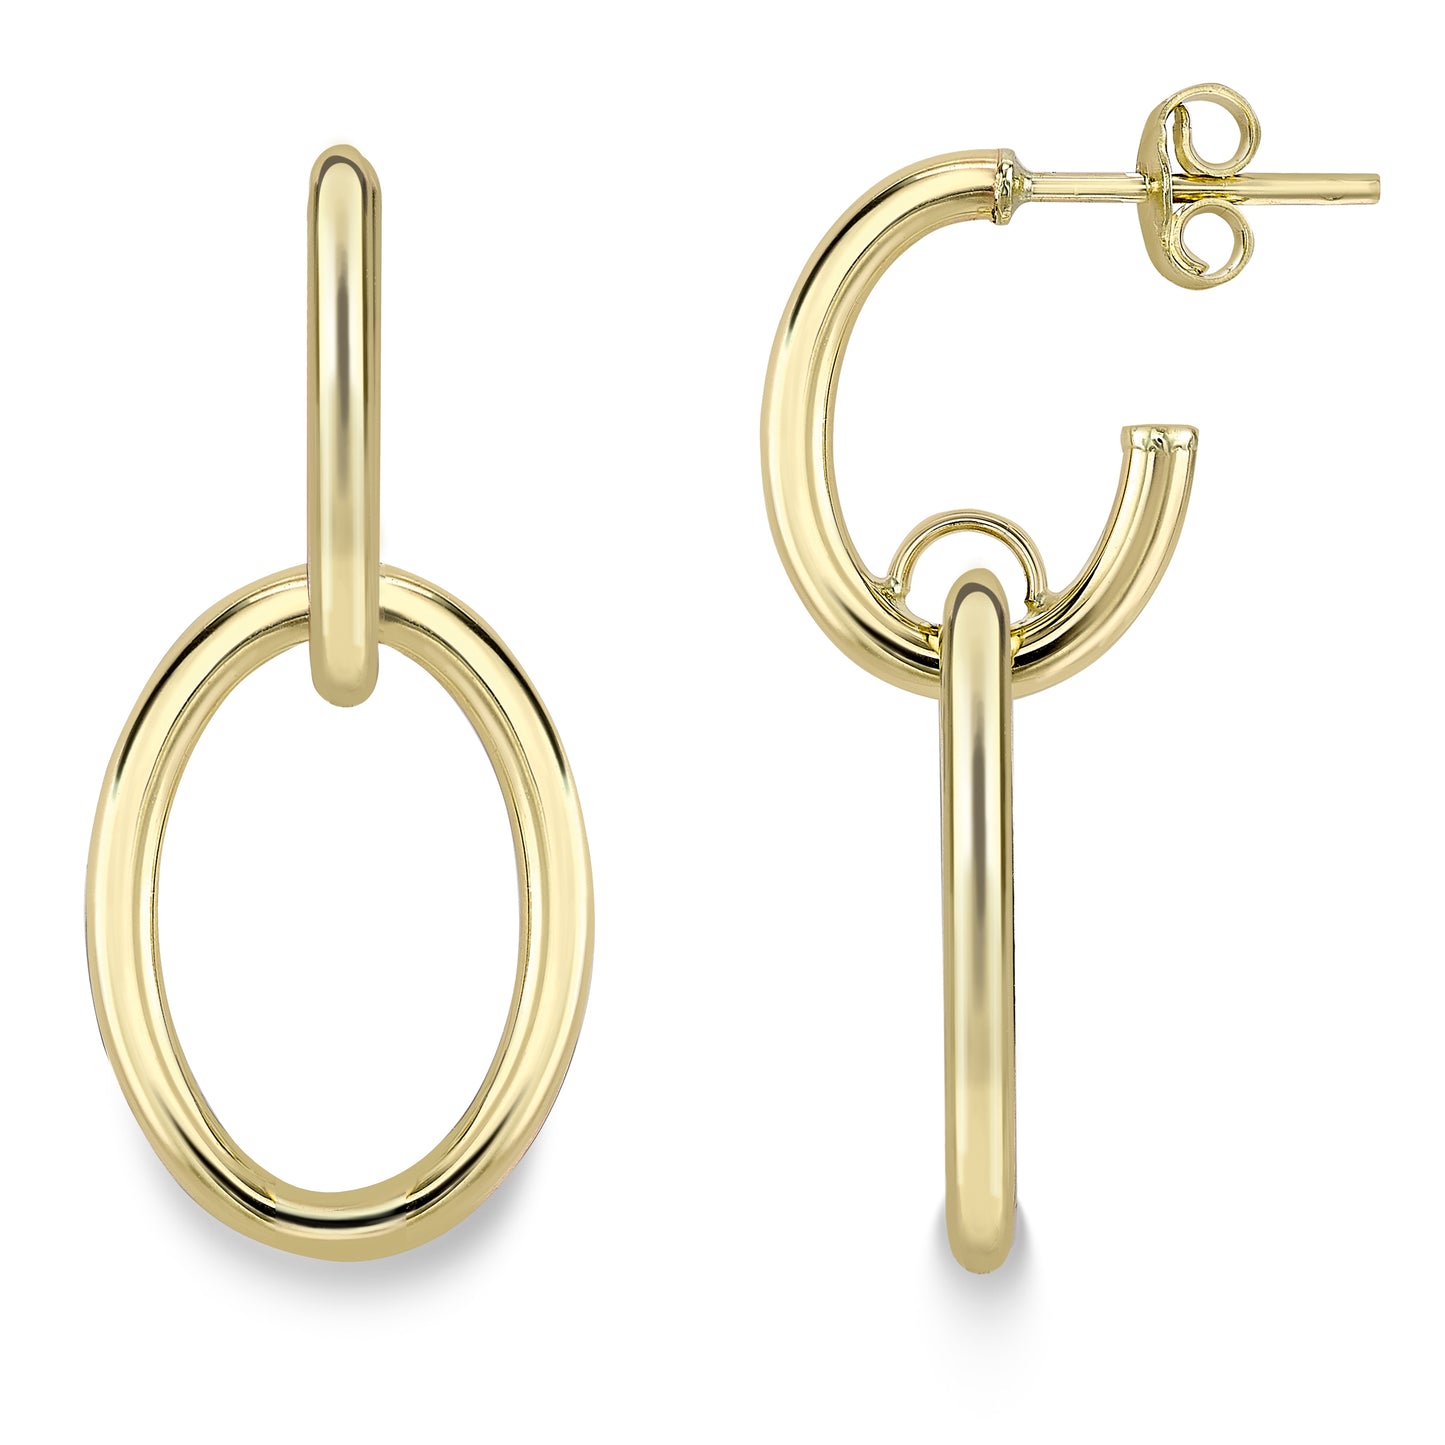 9ct Gold Hoop Earrings with Open Oval Drop - John Ross Jewellers